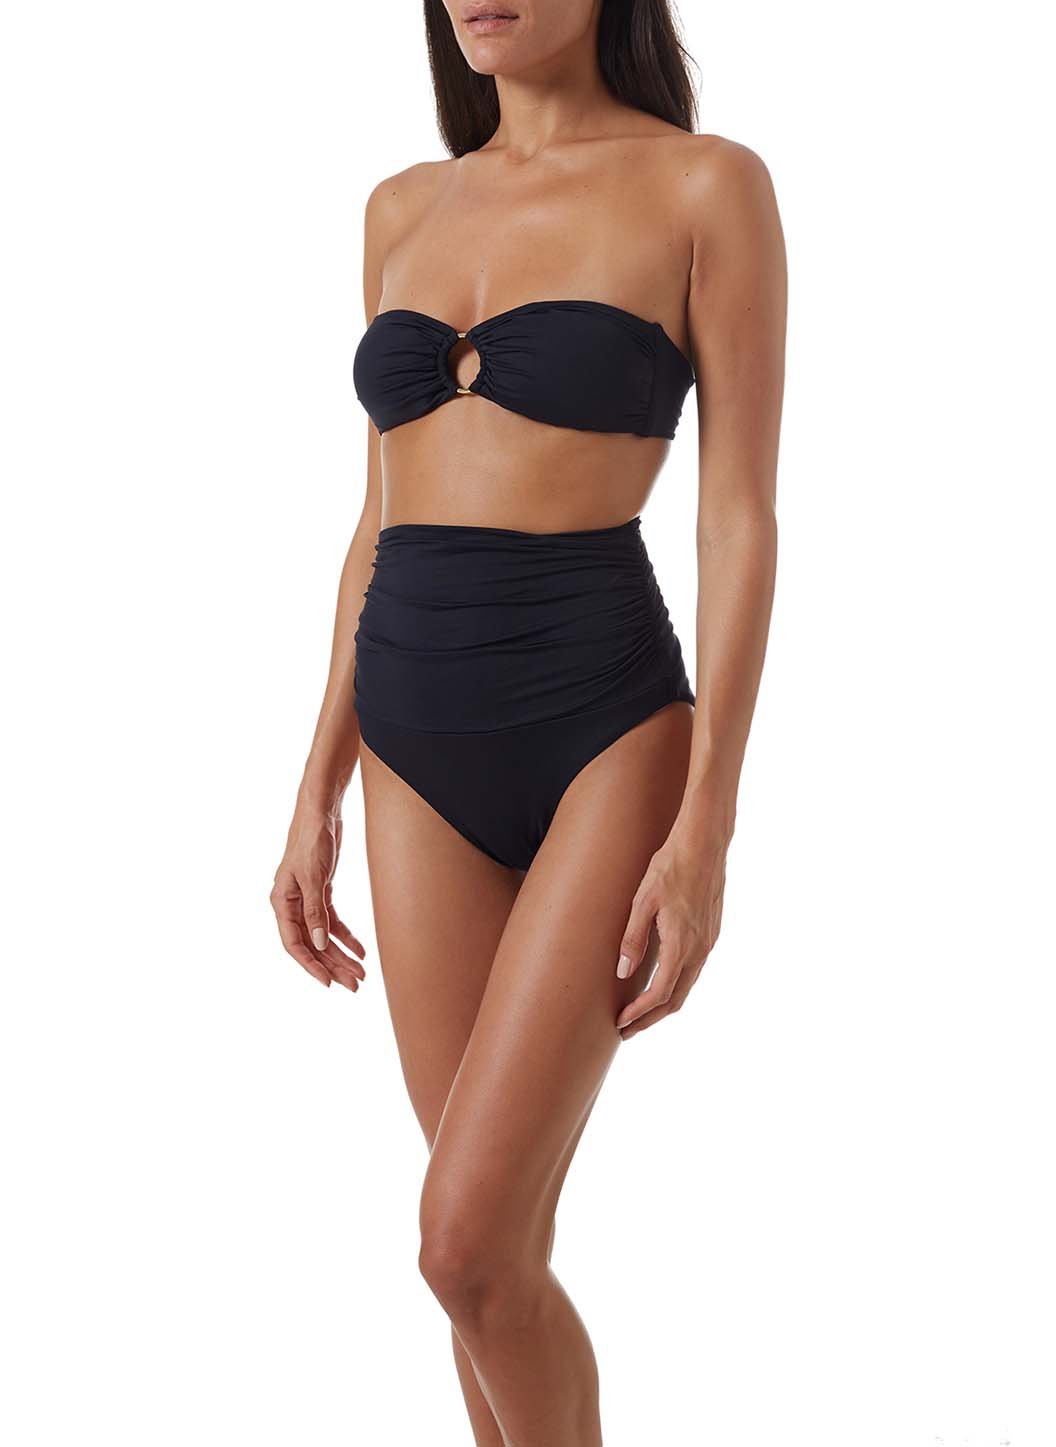 ancona-black-high-waisted-bandeau-bikini-model_F